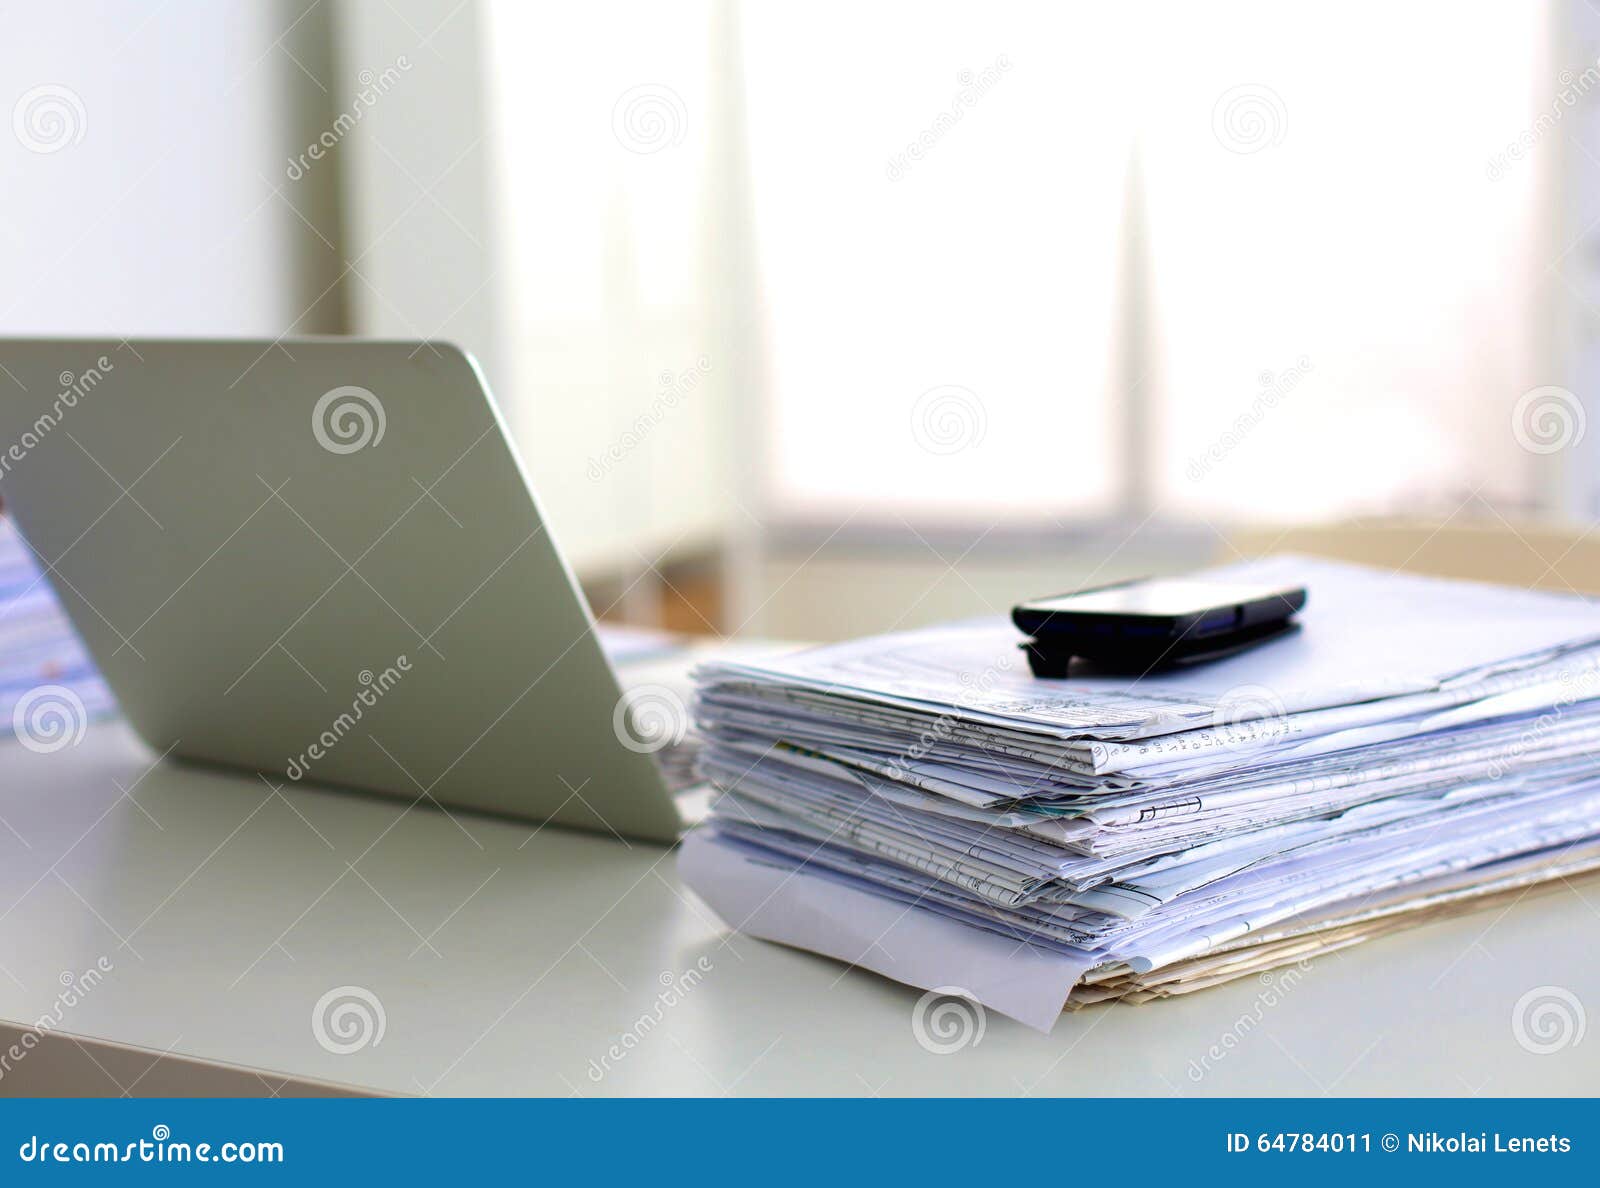 Запихнув в стол надоевшие бумаги я. Бумаги на столе. Красивый стол с бумагами. Стопка бумаг и компьютер. Компьютер и бумаги.